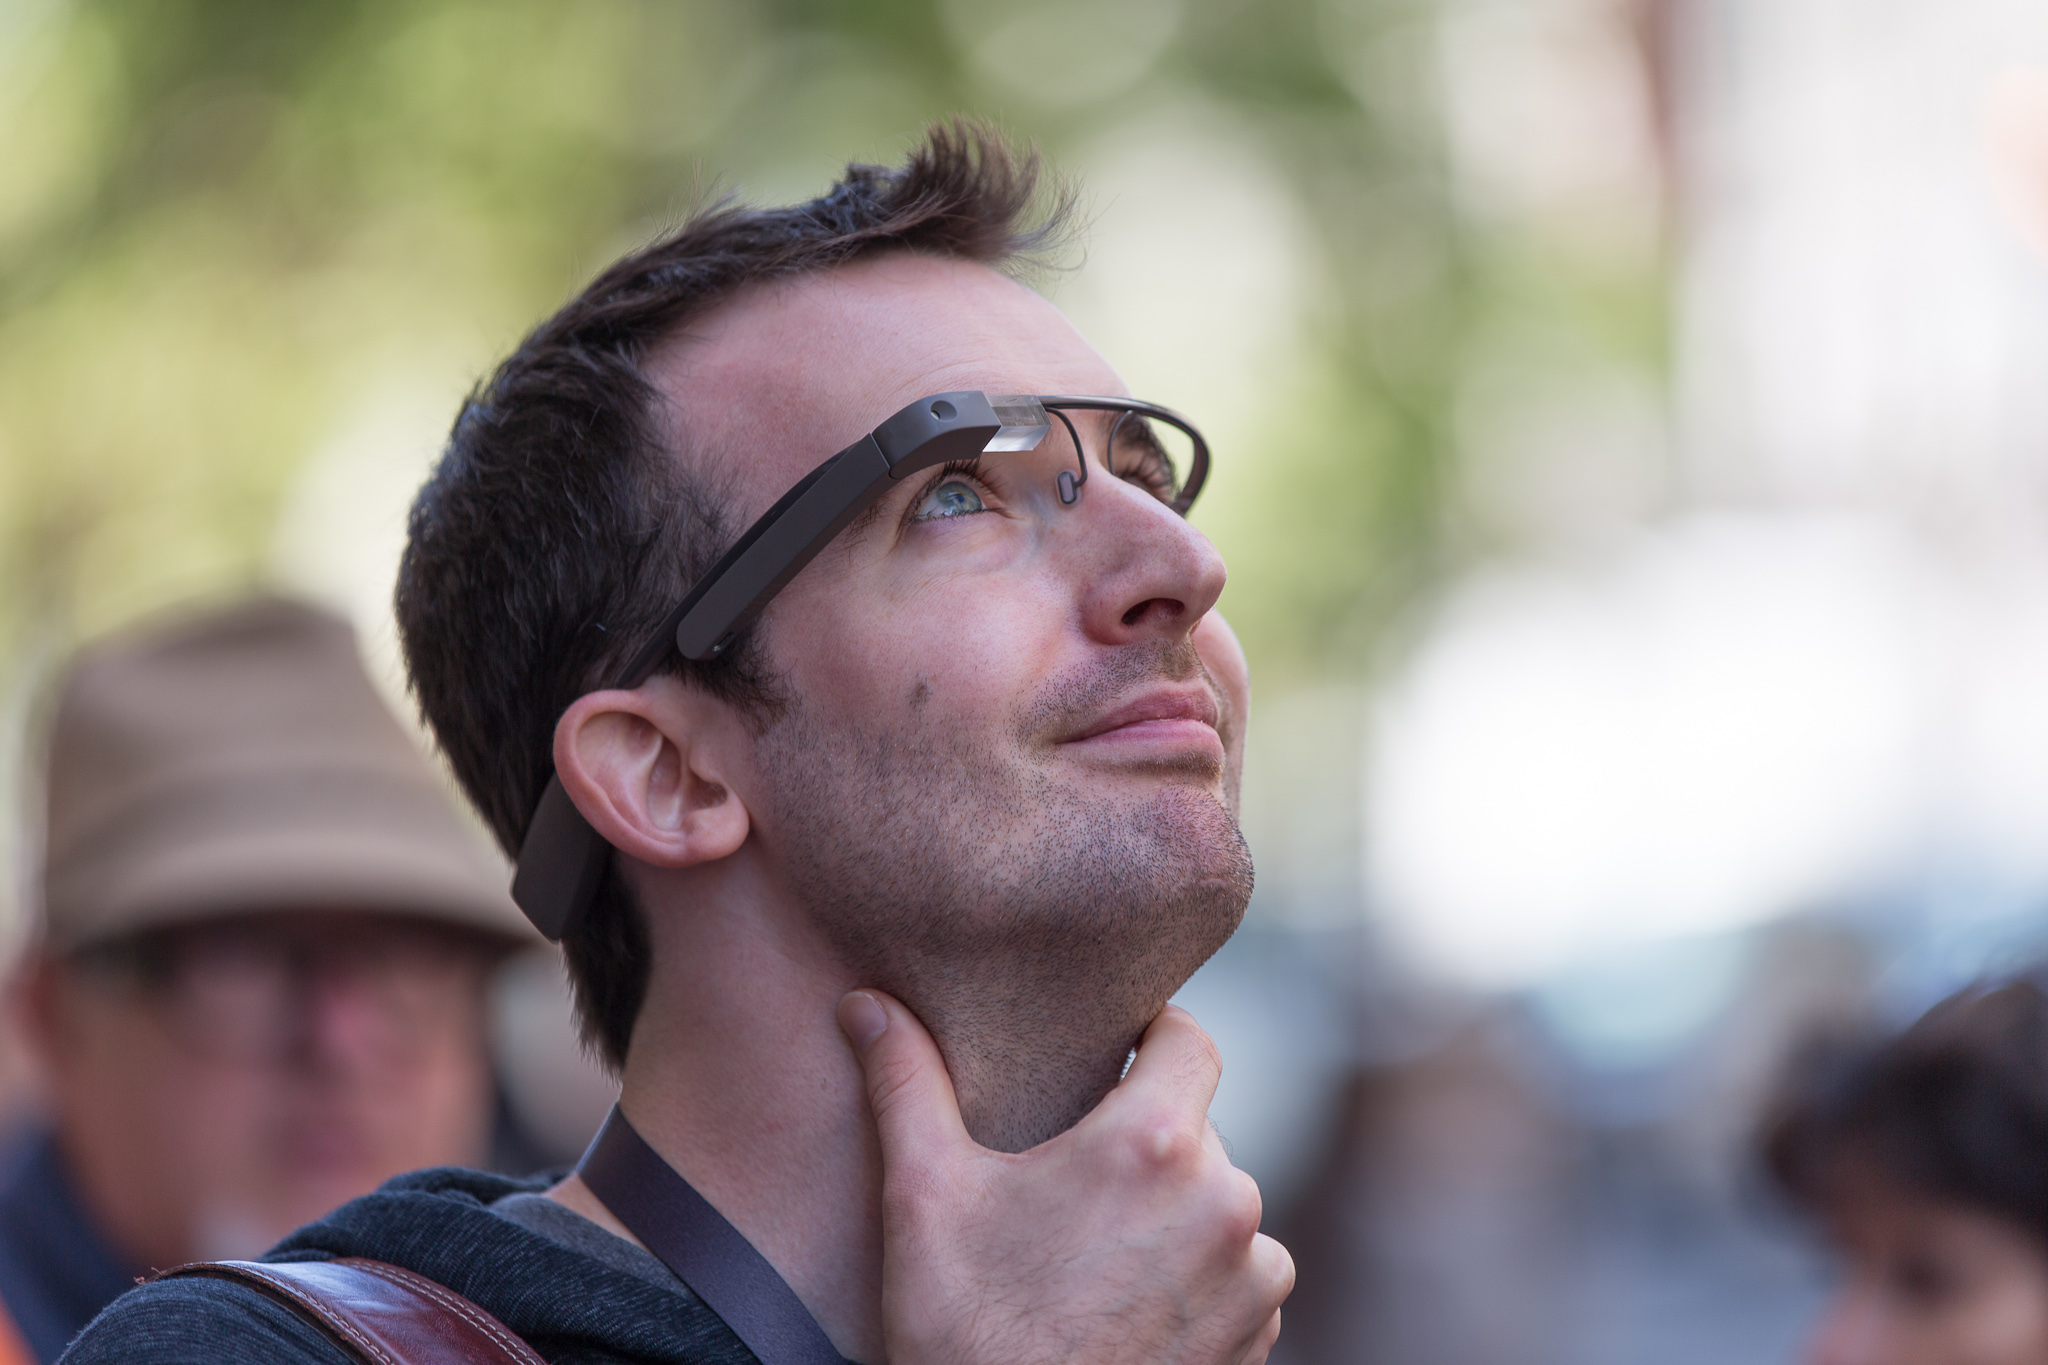 Nuova foto del Google Glass